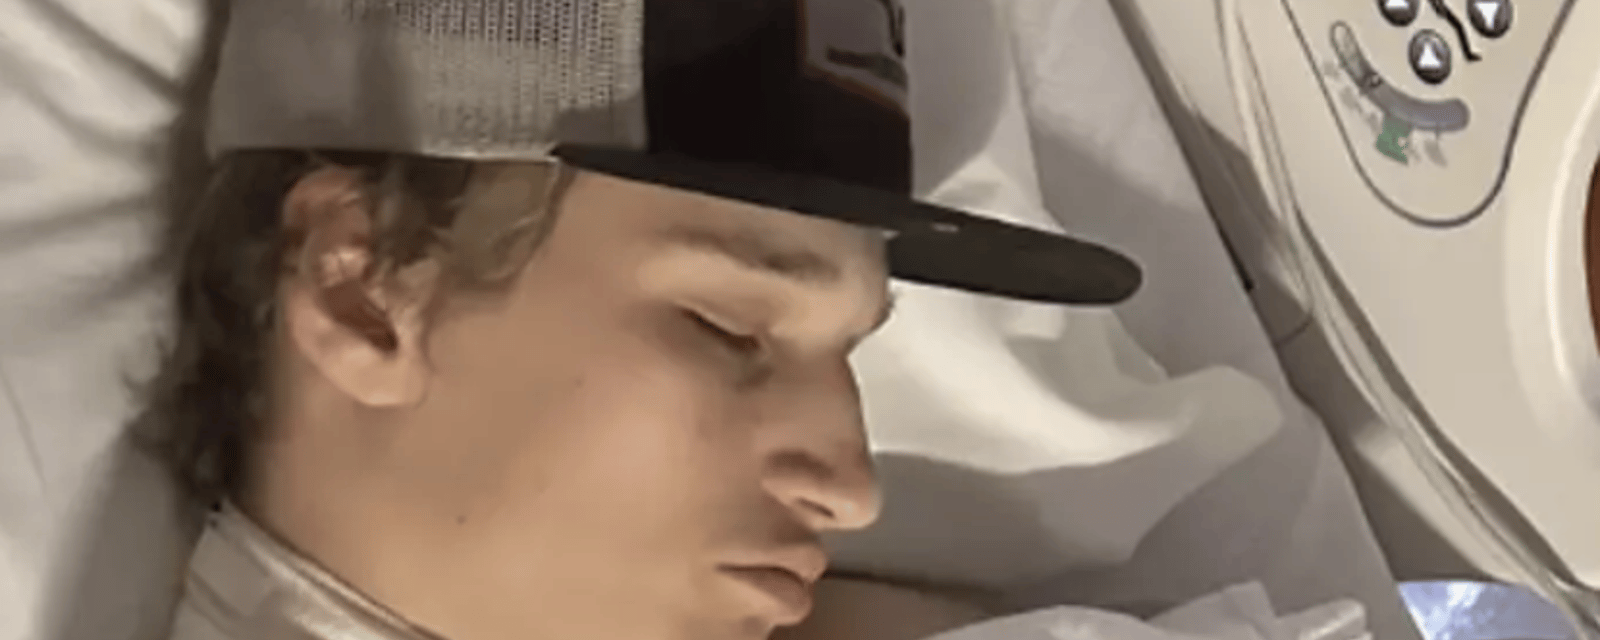 Un jeune homme se retrouve aux soins intensifs suite à un accident avec son téléphone dans le lit